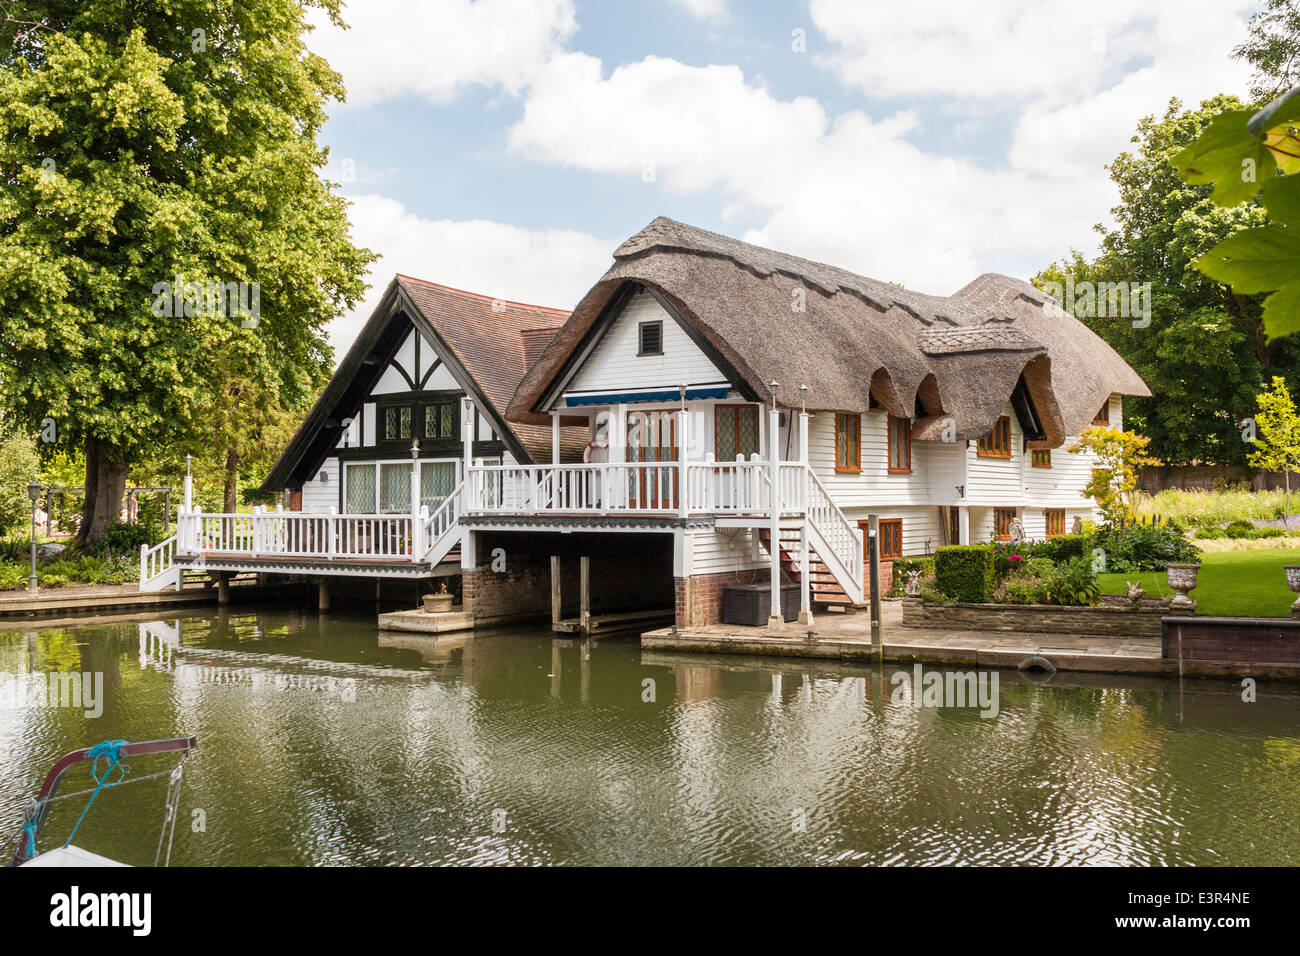 Riverside Cottage de chaume, Goring on Thames, Oxfordshire, England, GB, au Royaume-Uni. Banque D'Images